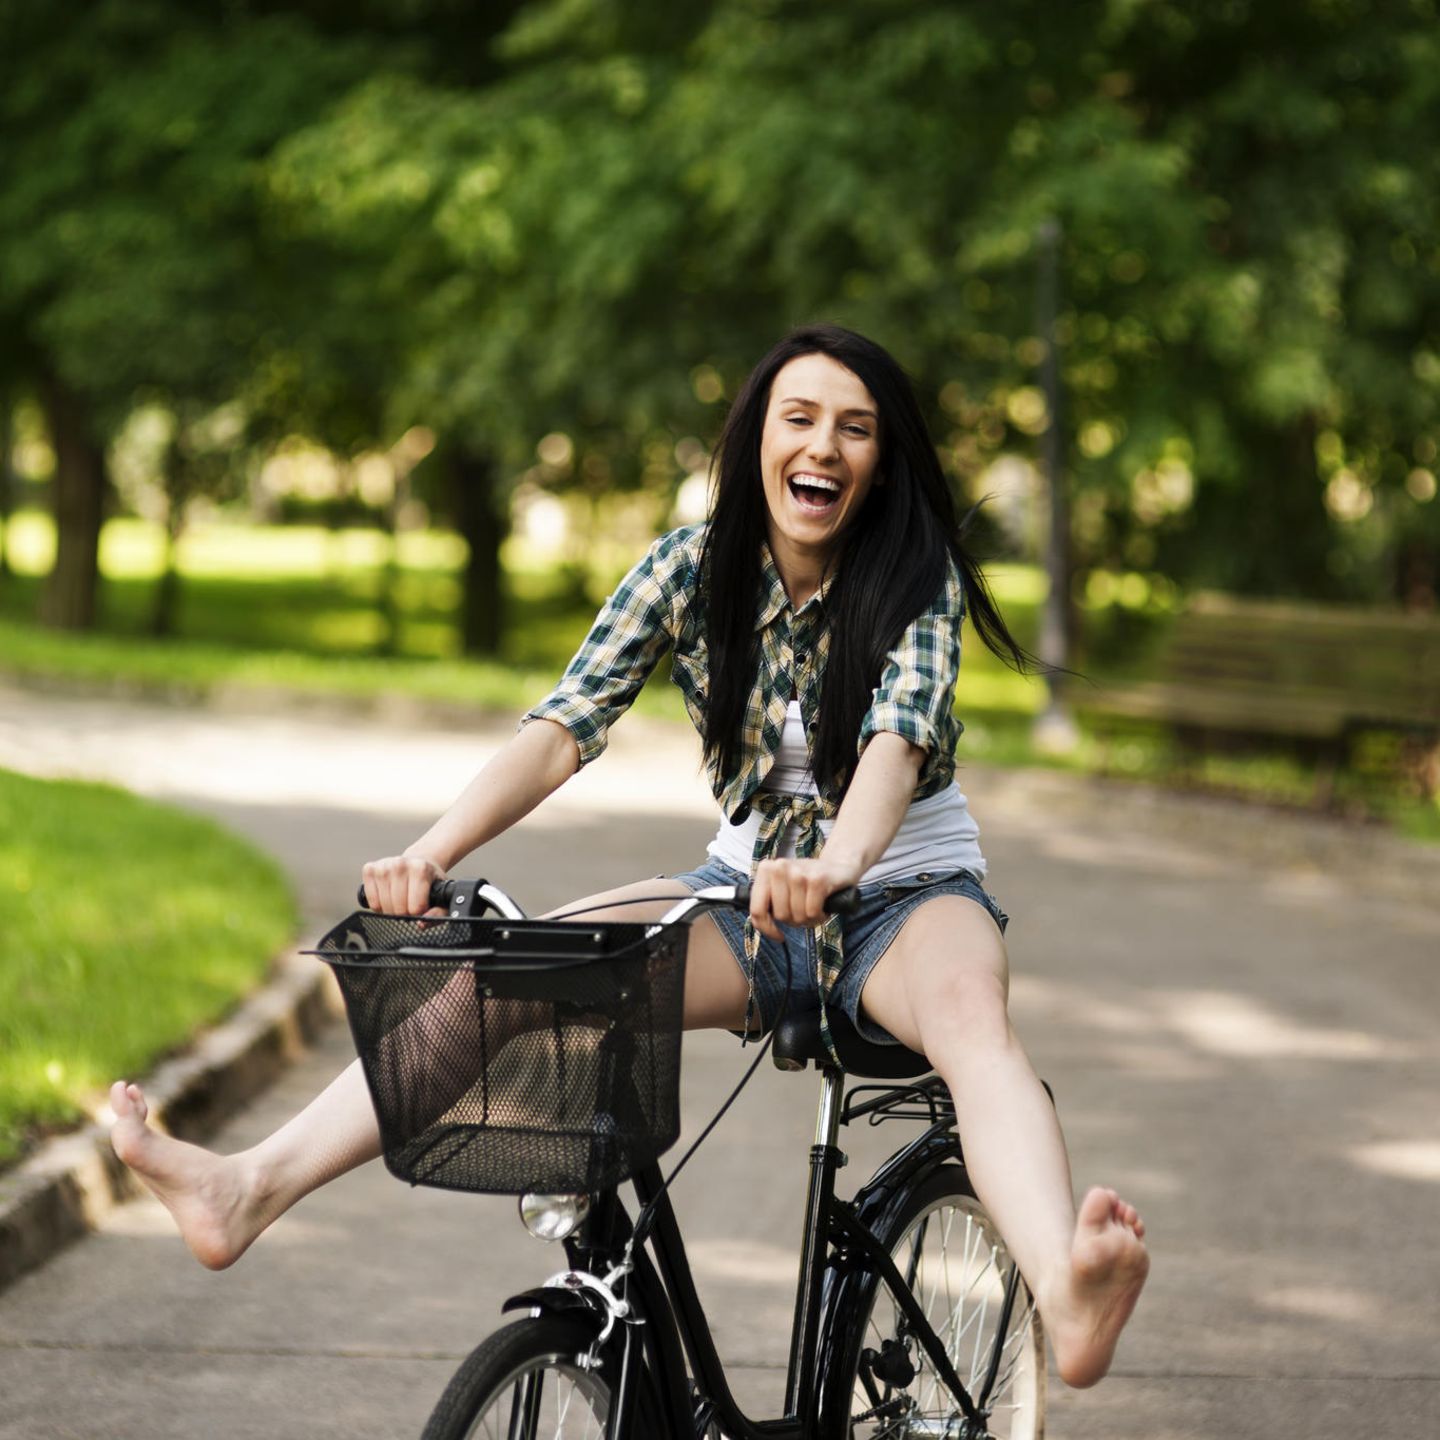 Gute-Laune-Fakten: Eine fröhliche junge Frau auf dem Fahrrad